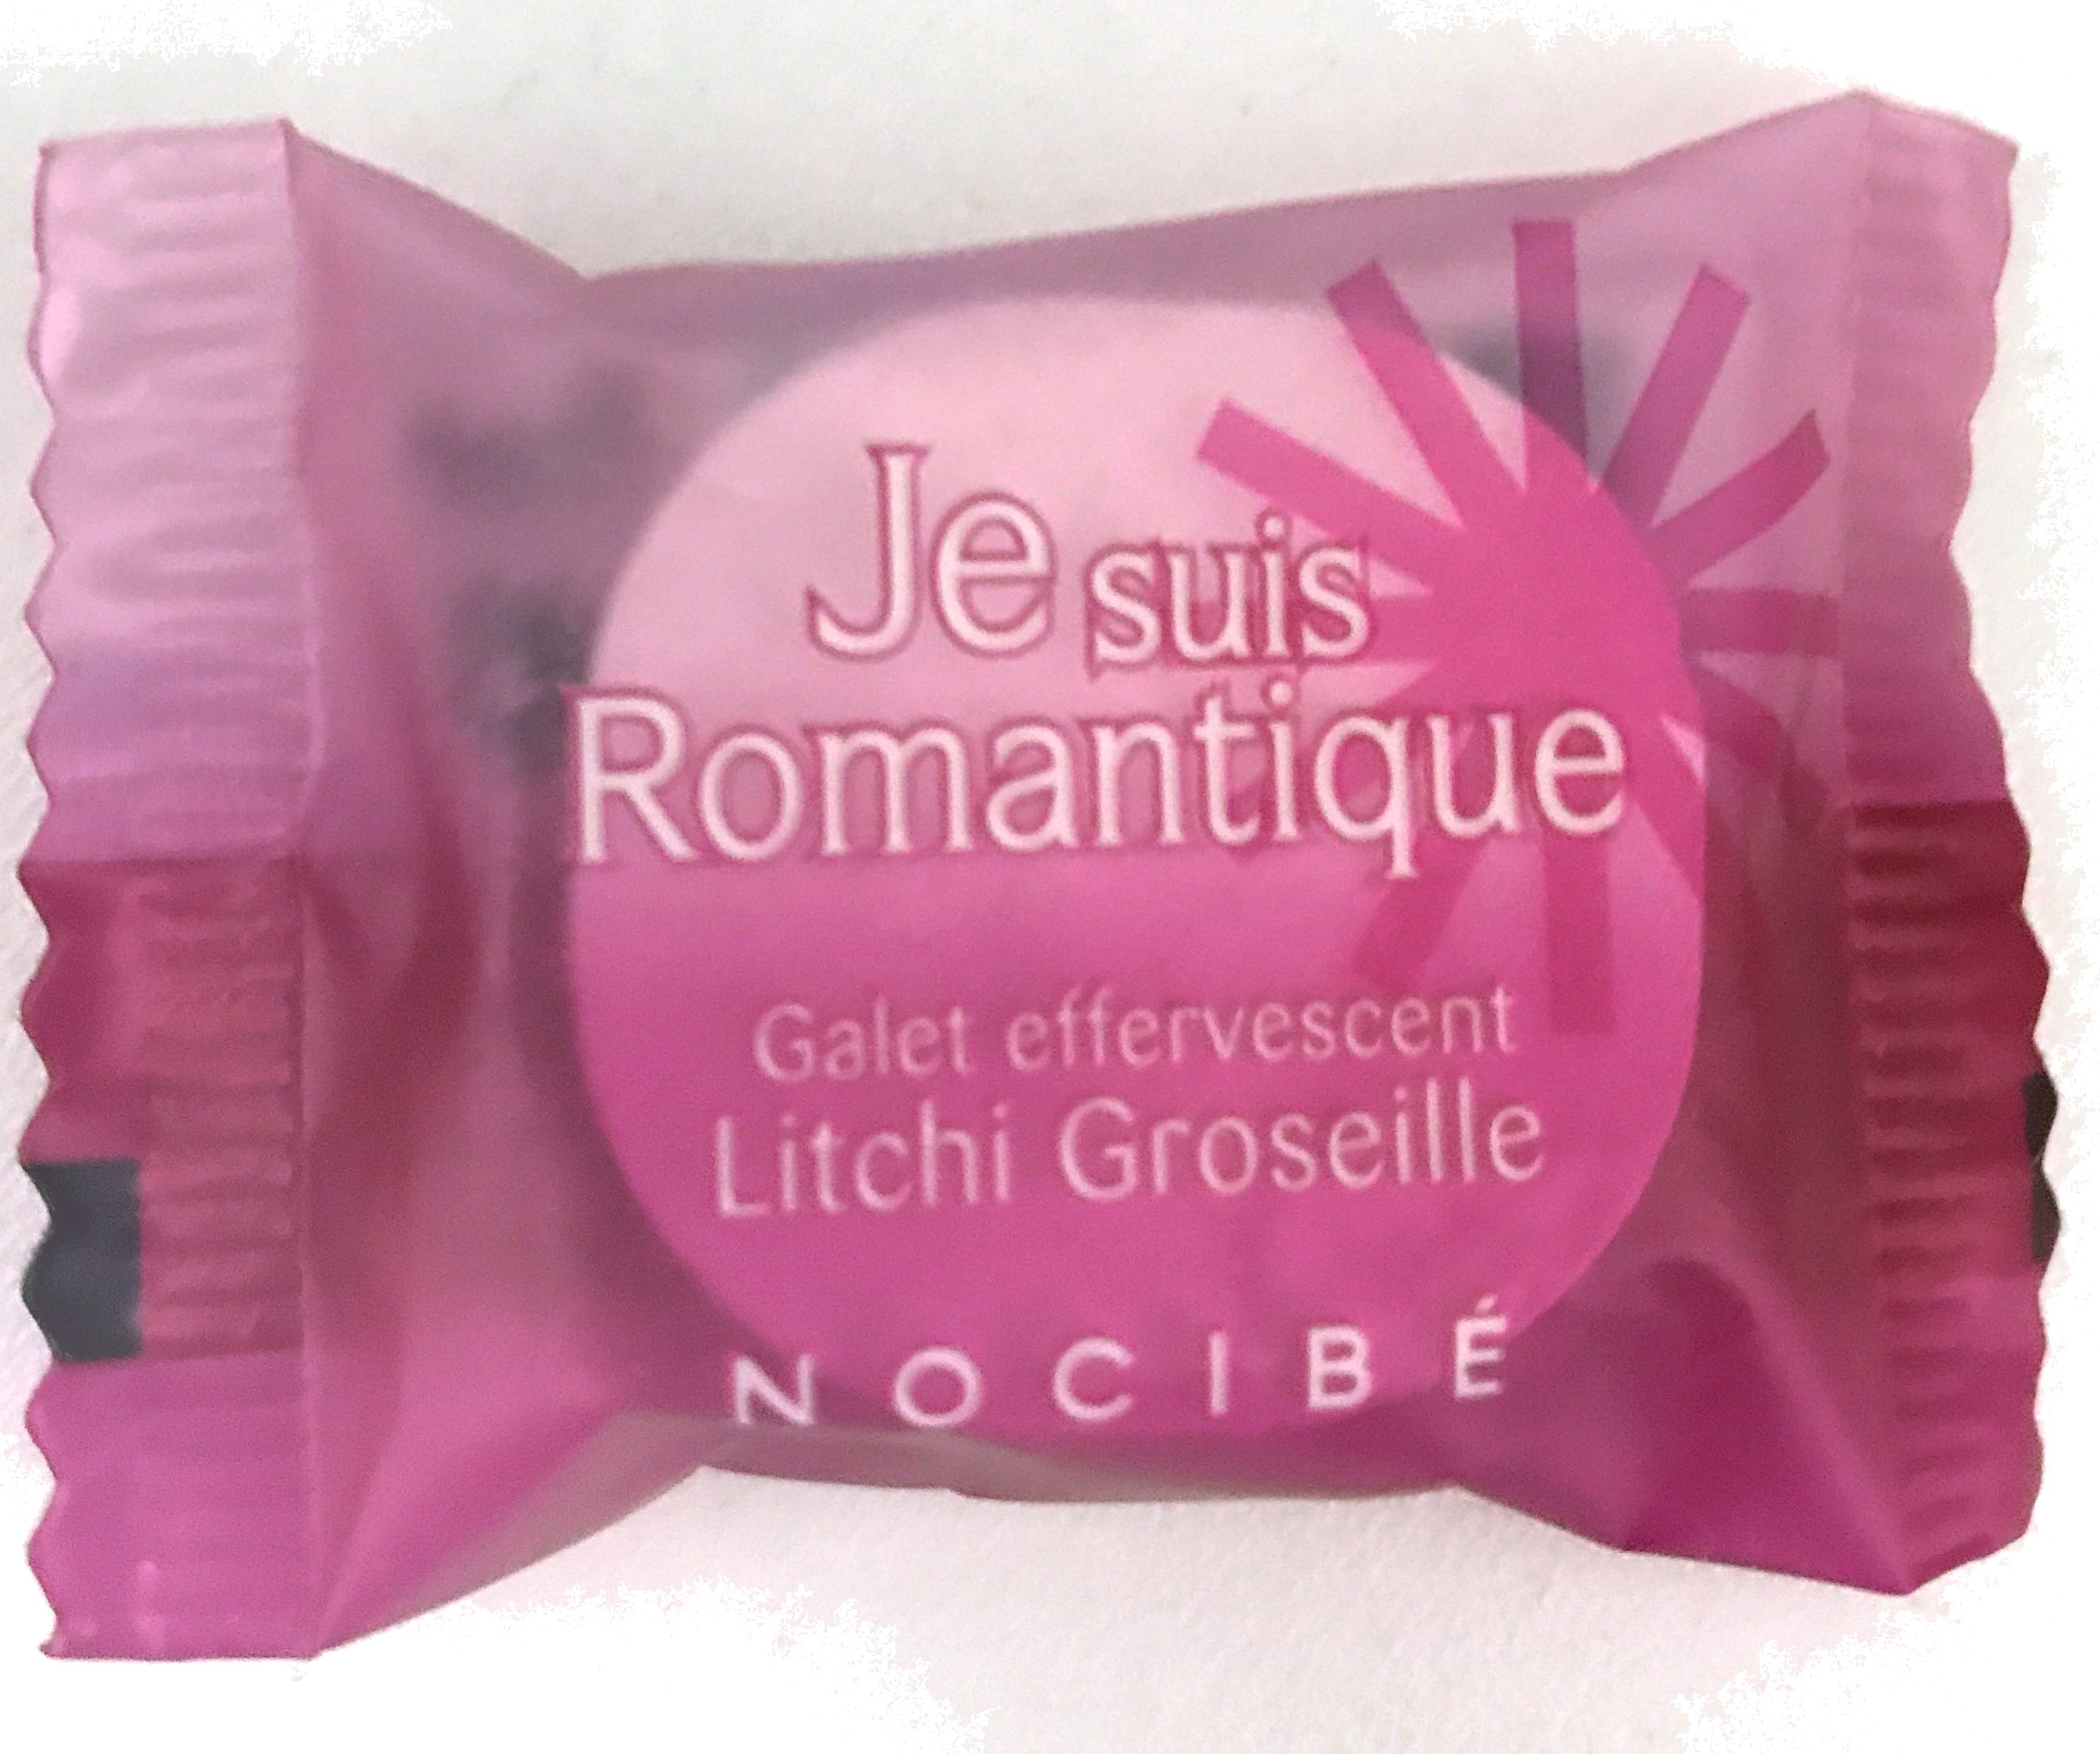 Je suis Romantique Galet Effervescent Litchi Groseille - Product - fr